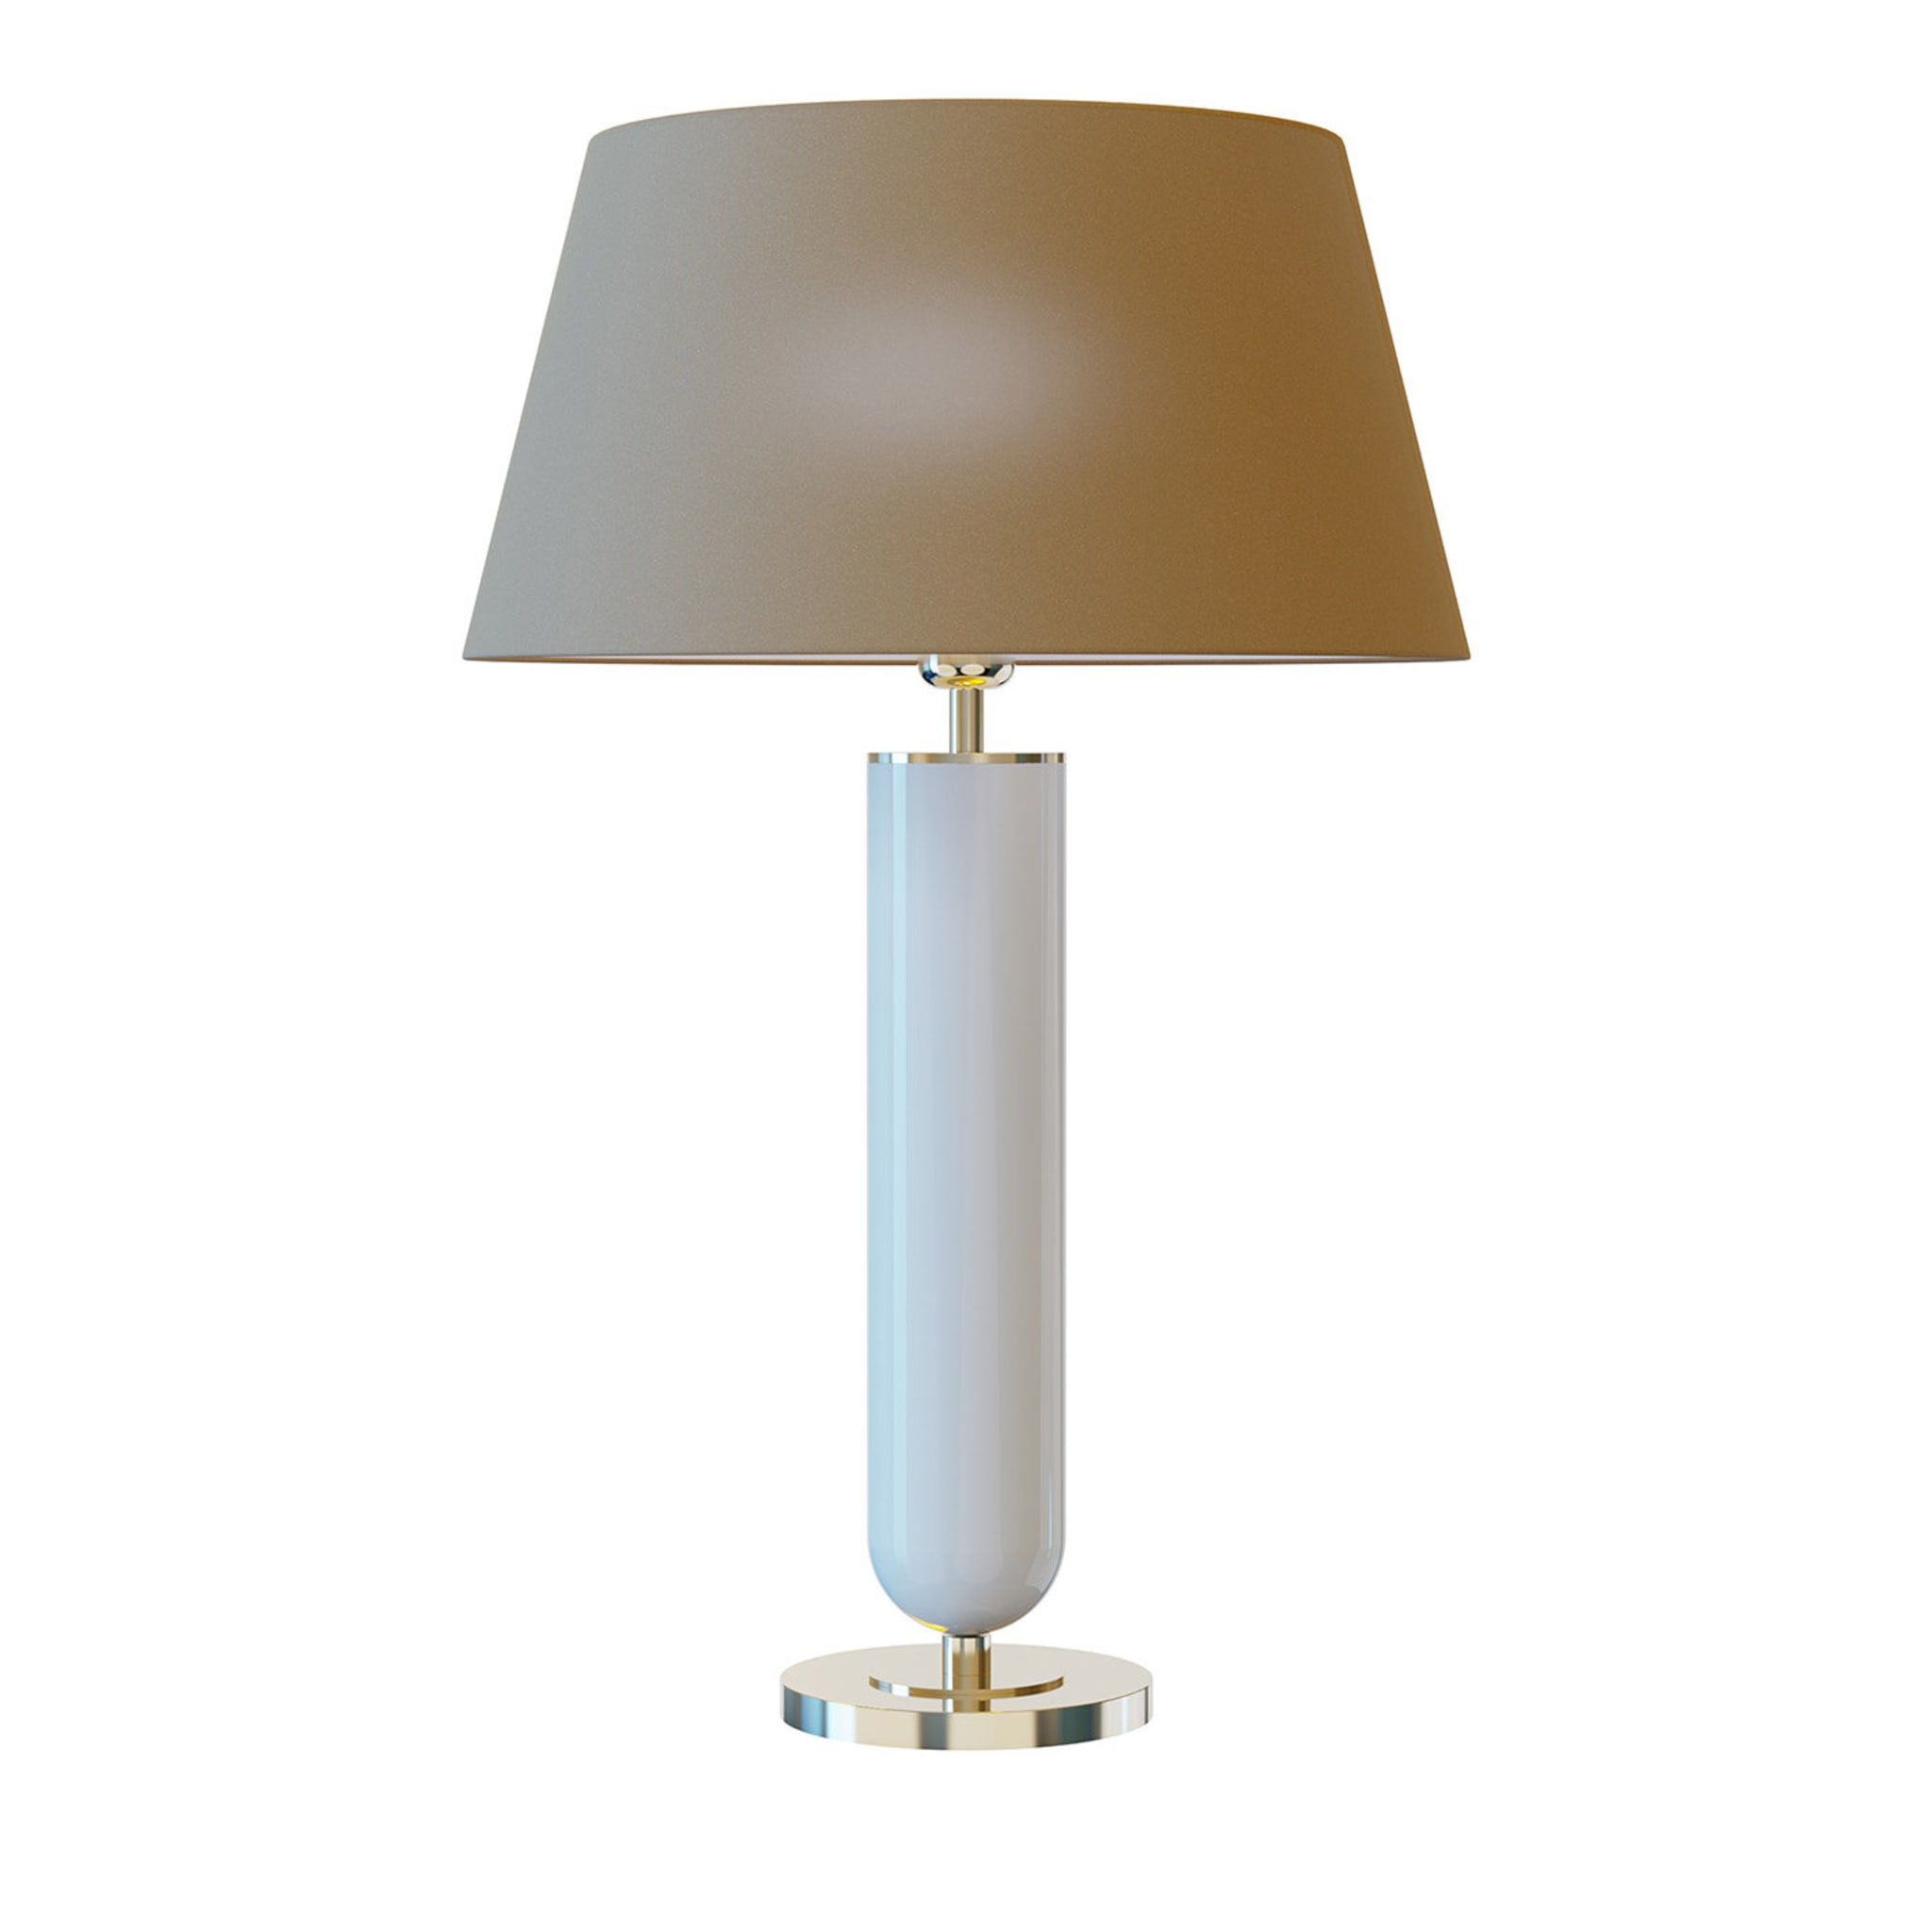 Lampe de table Ducas #1 - Vue principale